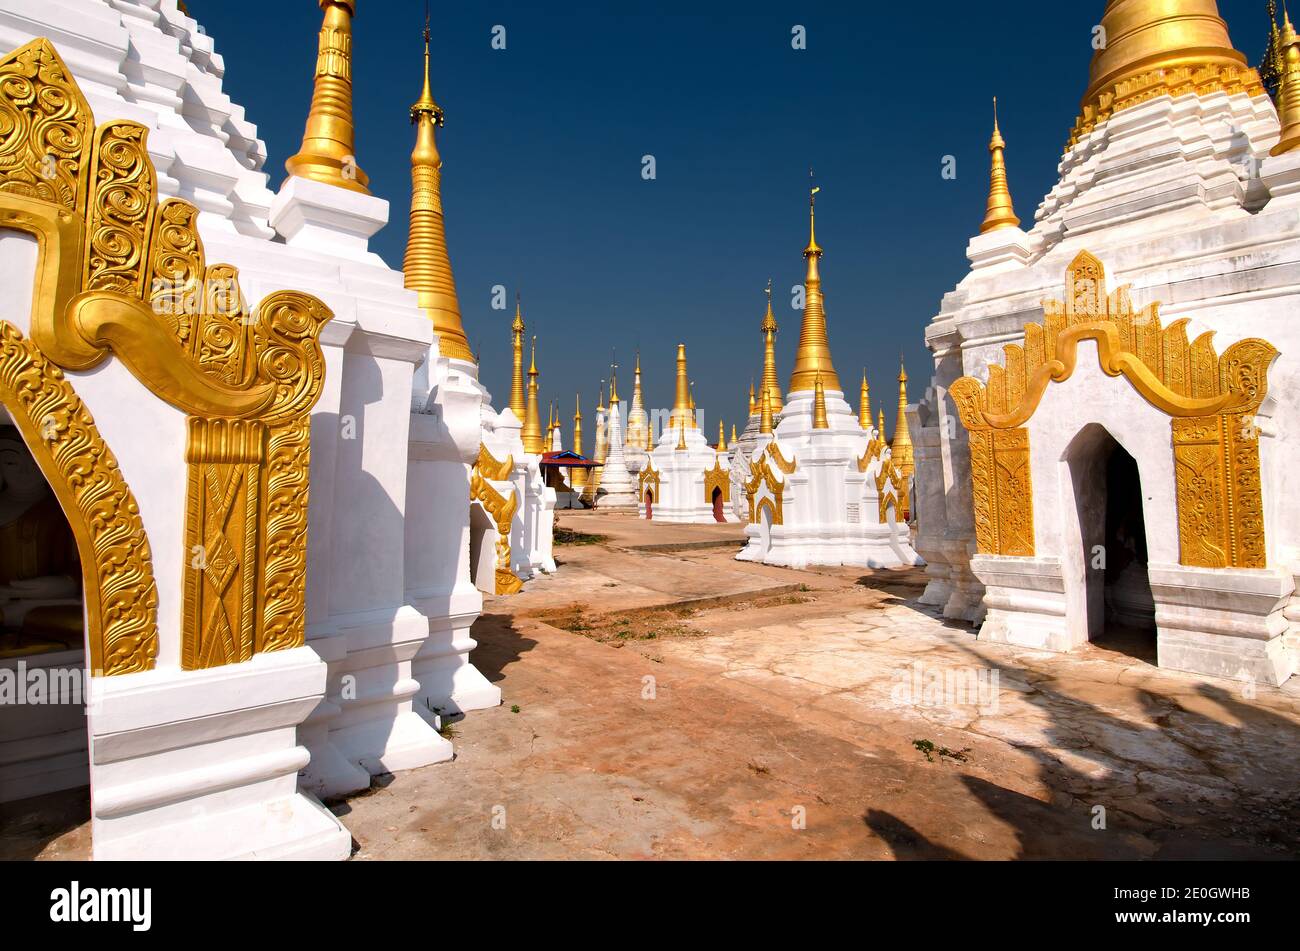 Templo Budista Ywama Paya junto al lago Inle en el estado de Shan, Myanmar (antes Birmania). Foto de stock